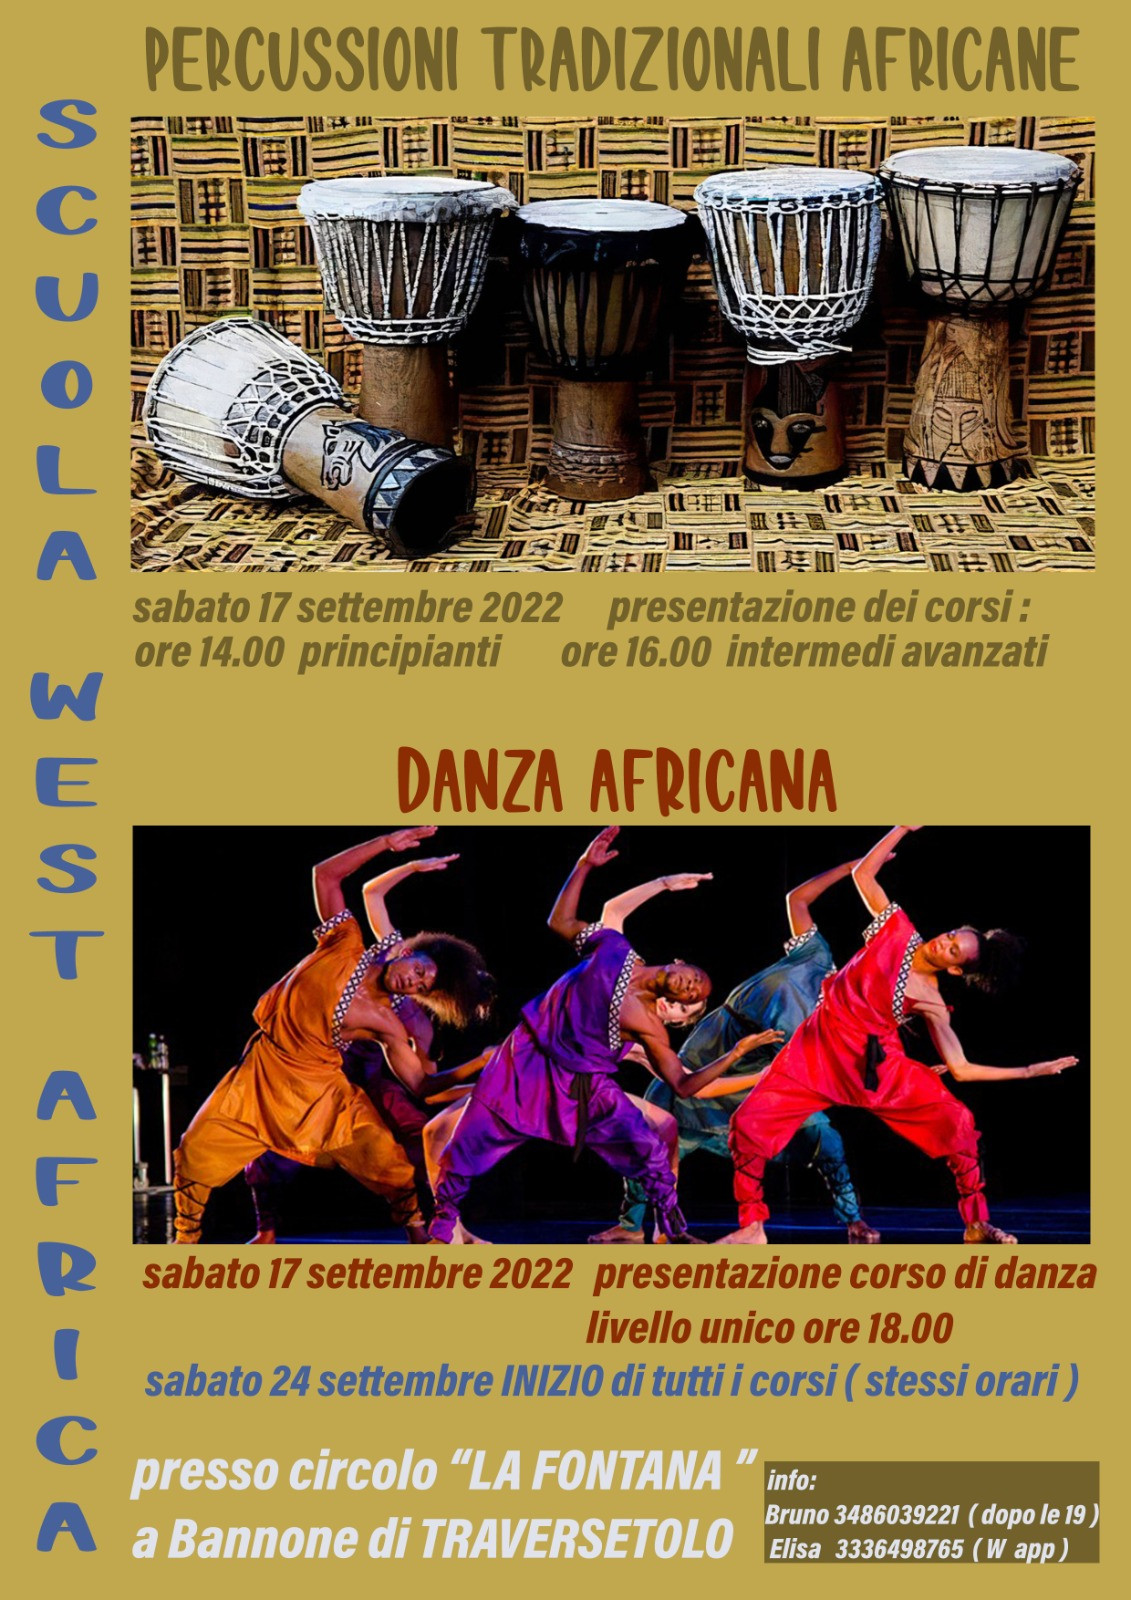 Torna il corso di percussioni tradizionali e danze africane